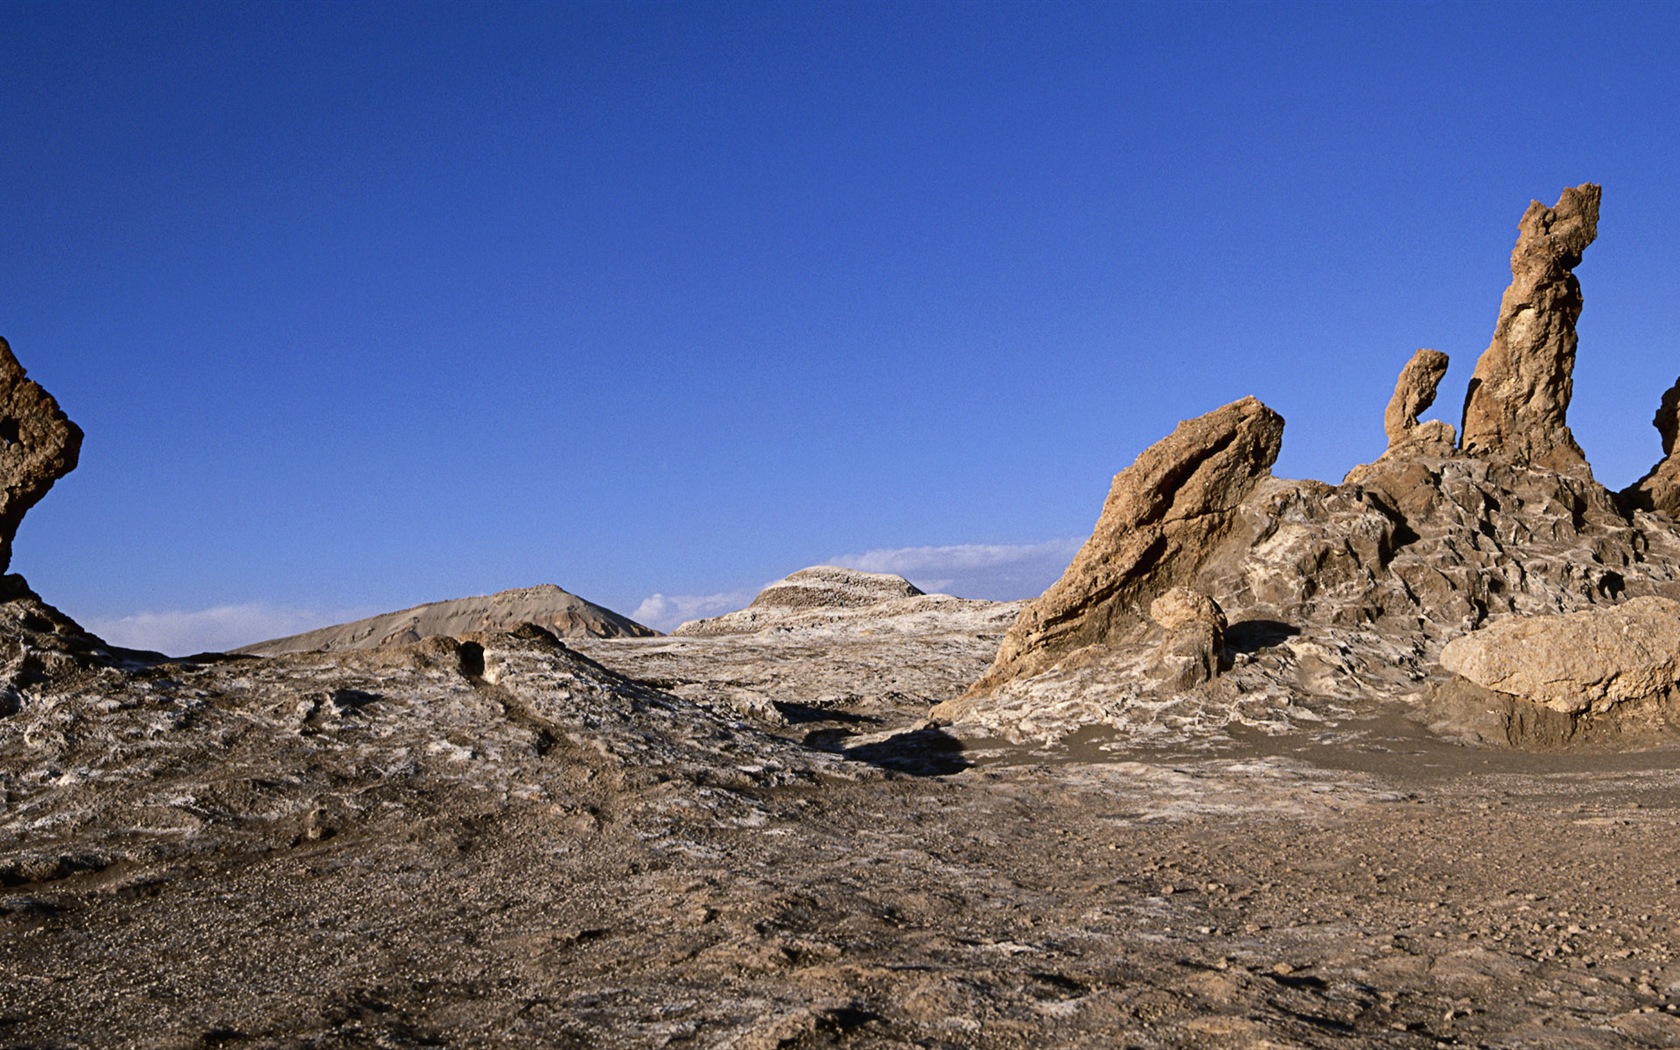 Les déserts chauds et arides, de Windows 8 fonds d'écran widescreen panoramique #11 - 1680x1050